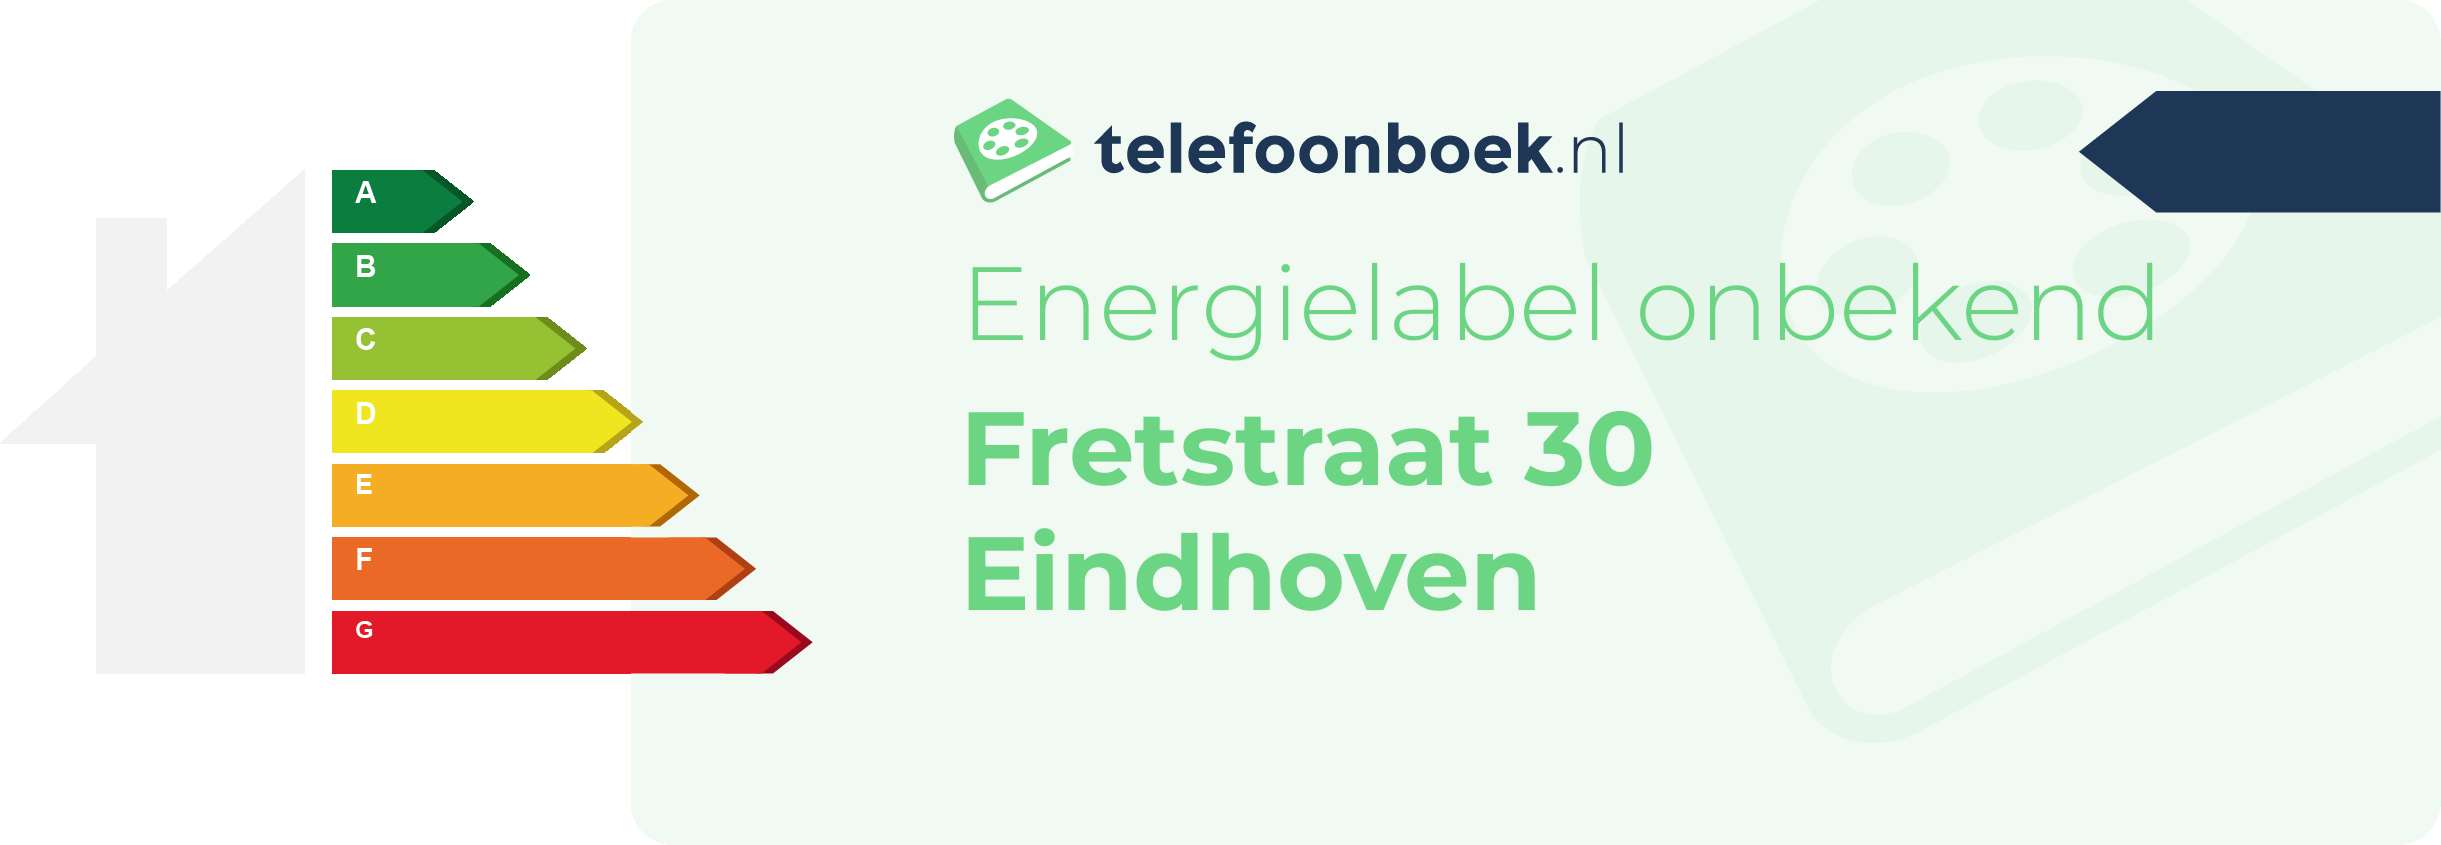 Energielabel Fretstraat 30 Eindhoven